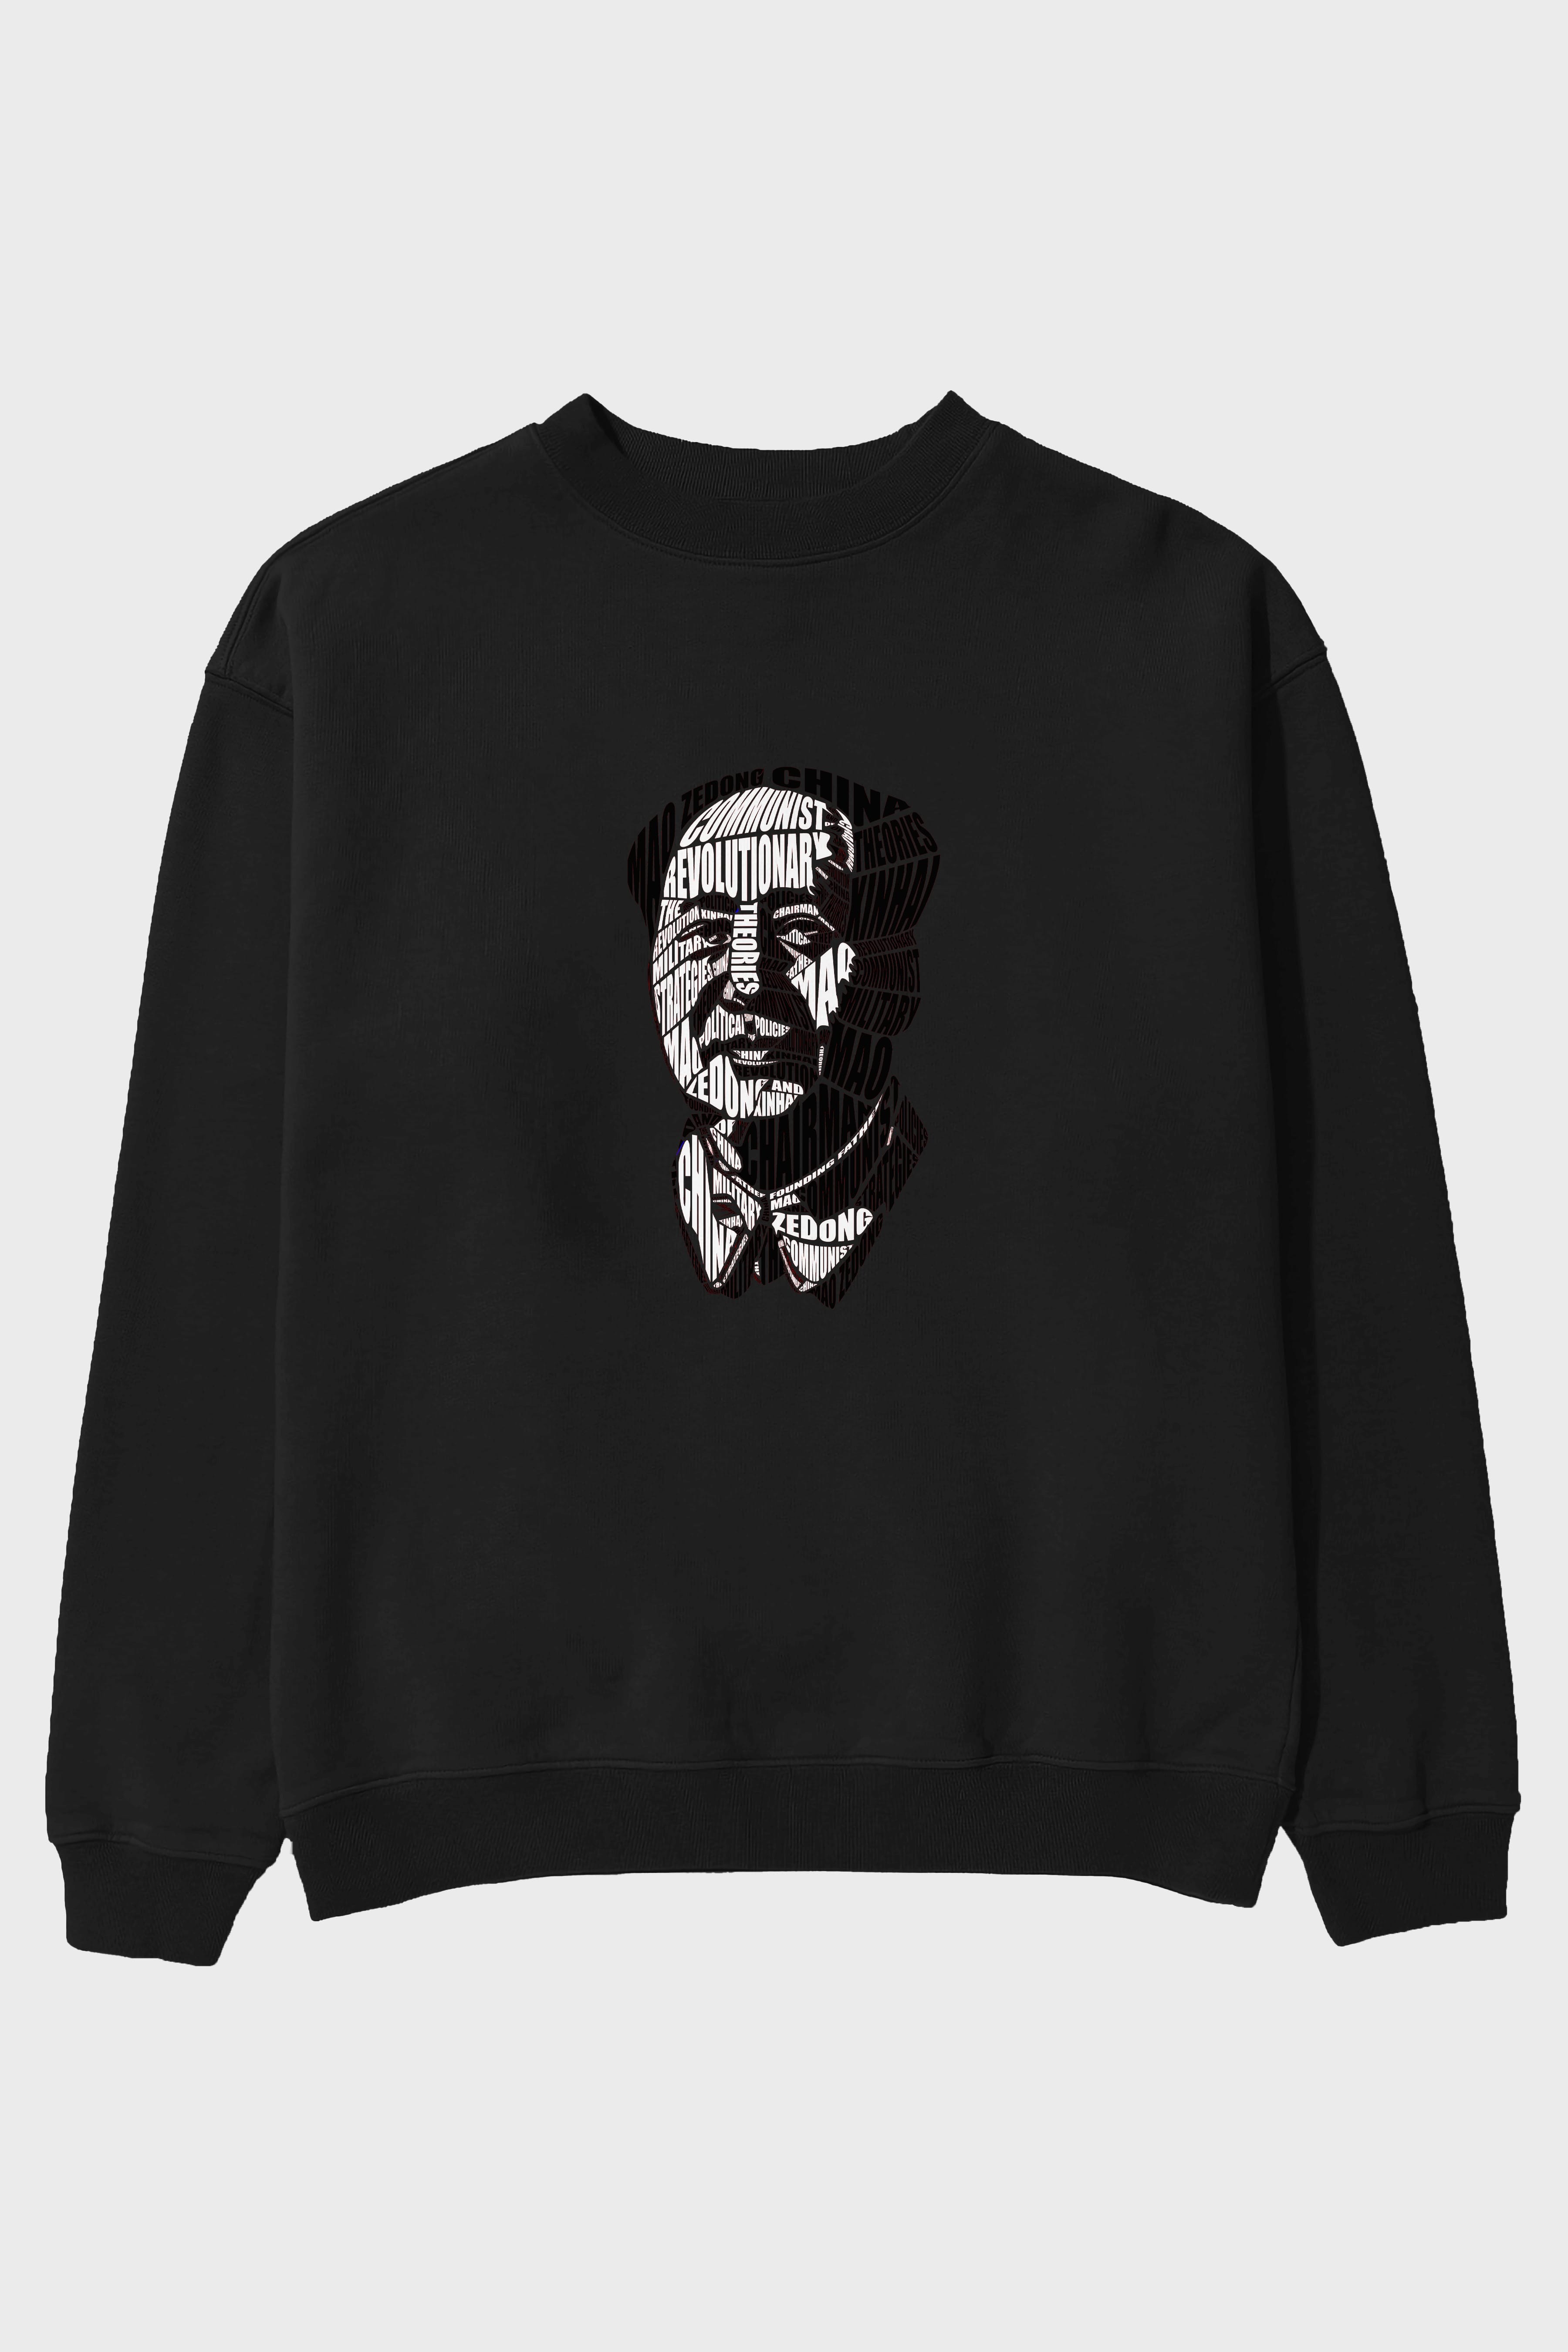 Mao Zedong Calligram Ön Baskılı Oversize Sweatshirt Erkek Kadın Unisex